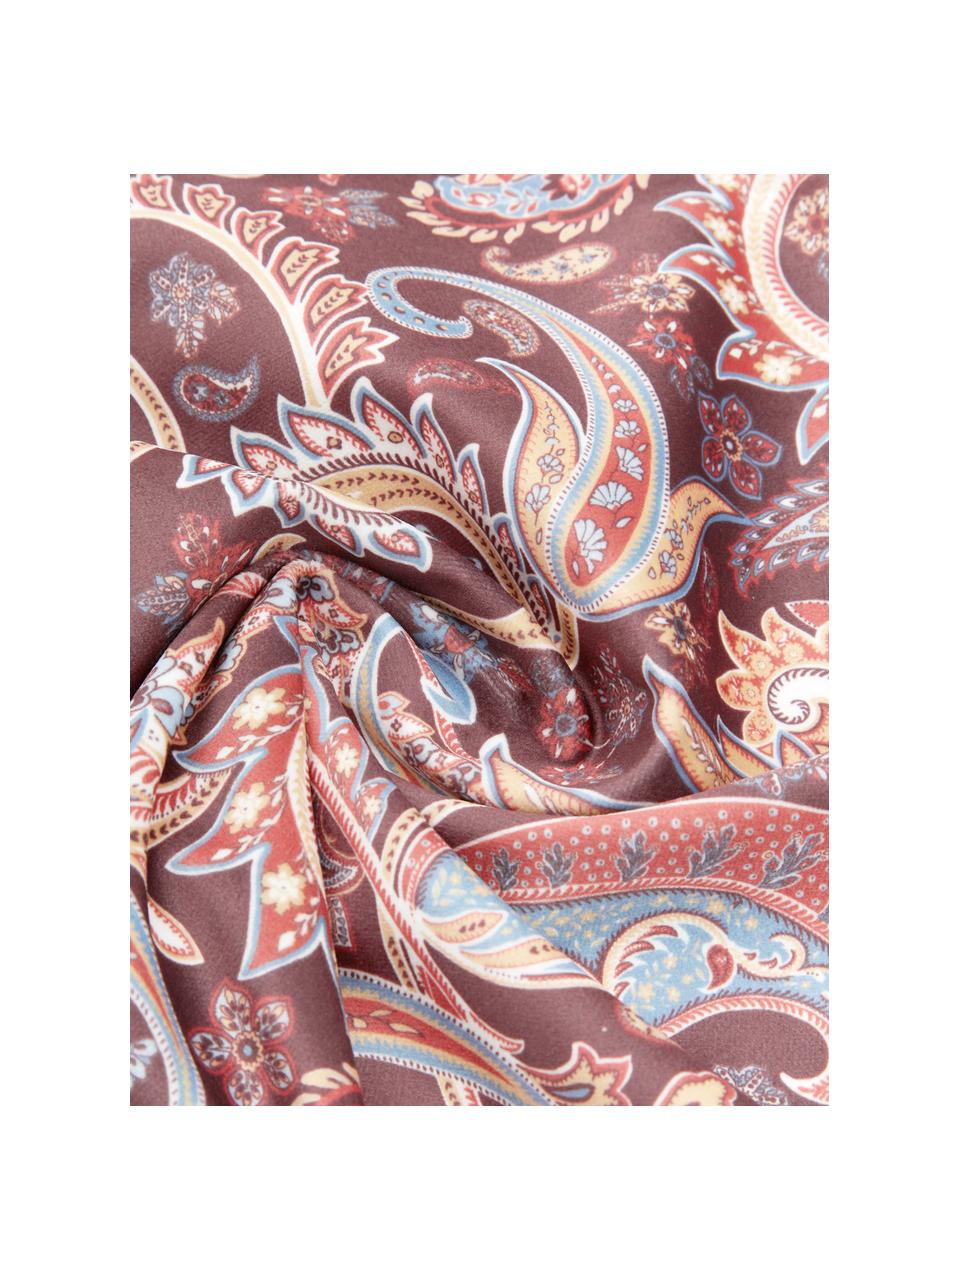 Kussenhoes Indira met paisley patroon in rozetinten, 100% polyester fluweel, Multicolour, 40 x 40 cm